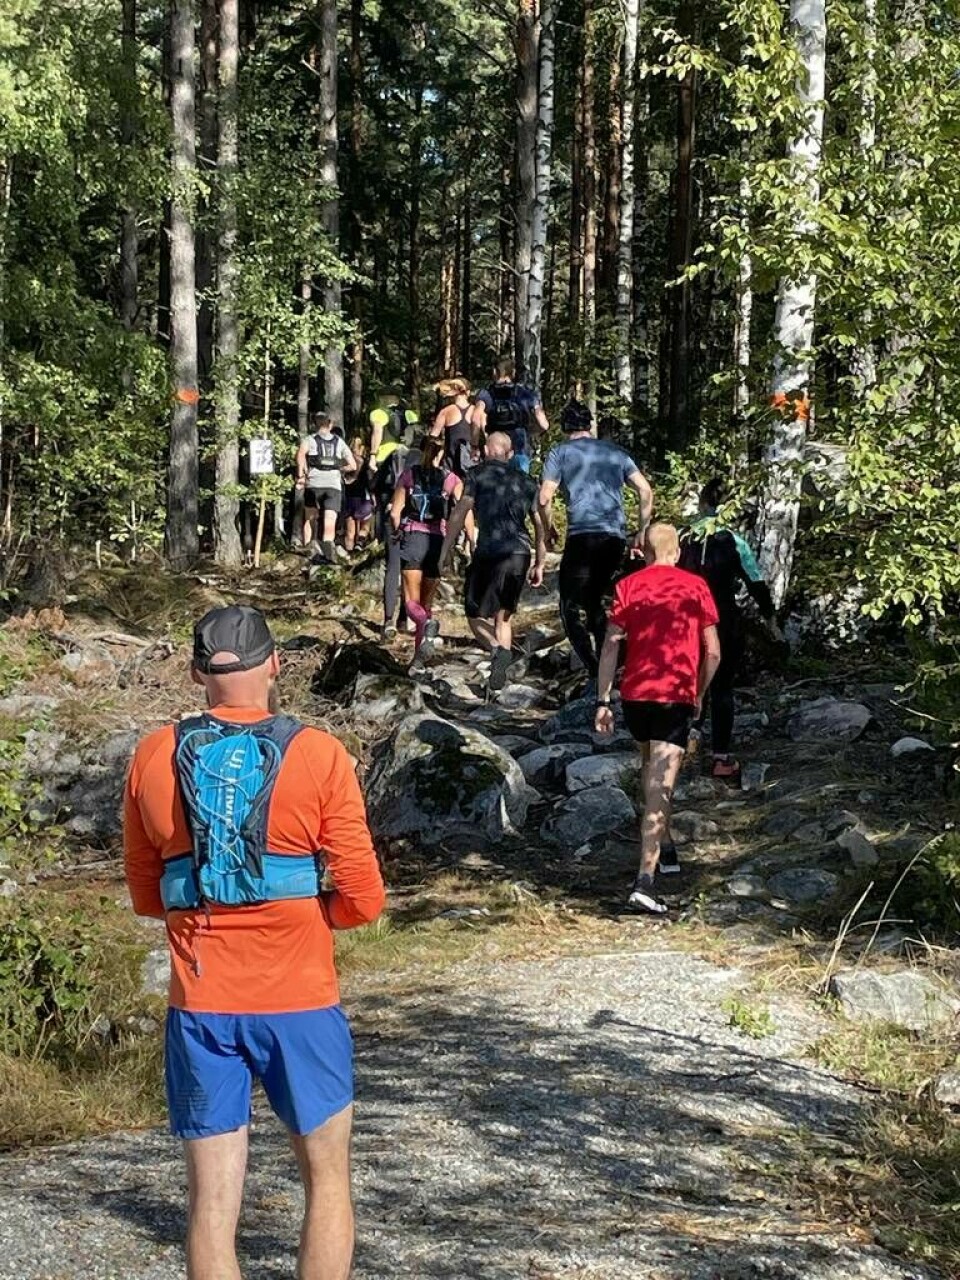 Westeros Trail Running Society bjöd in västeråsarna till stiglöpining längs Bruksleden. Ett 15-tal entusiaster gav sig iväg på morgonen för de olika distanserna 7, 18 eller 26 km. Foto: Jonas Bergkvist